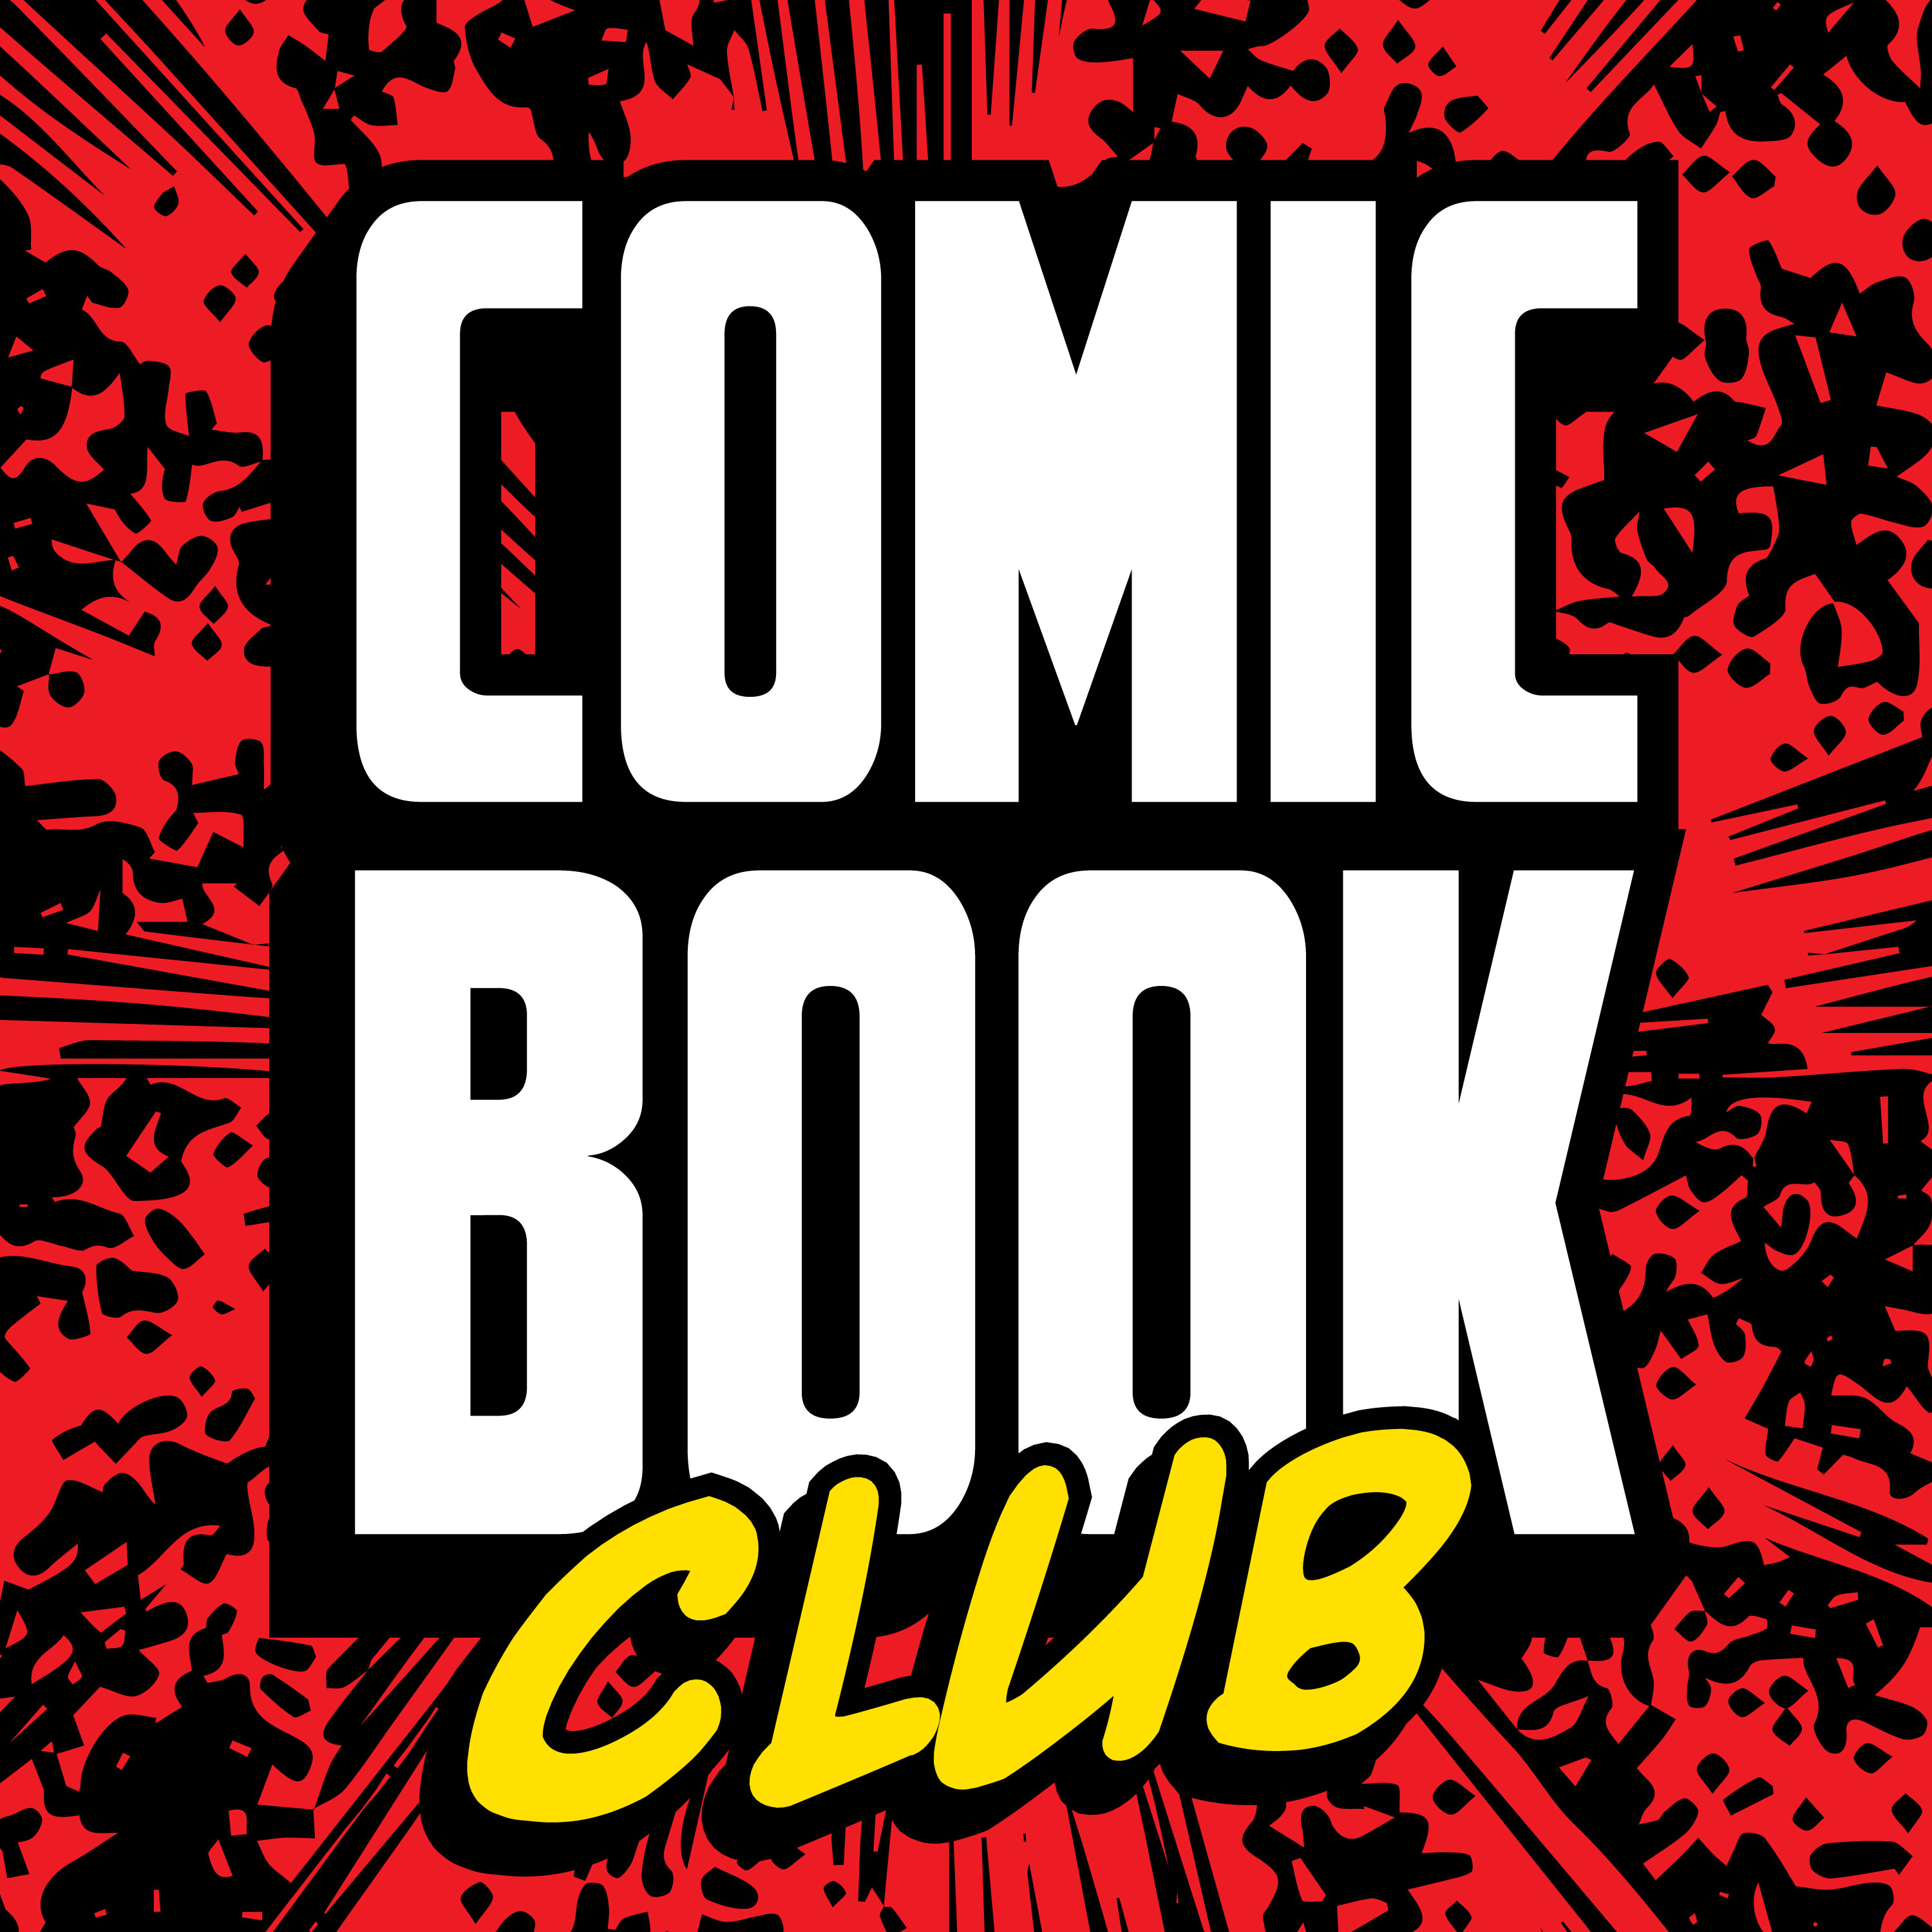 Comic Book Club Bonus: The Suicide Squad